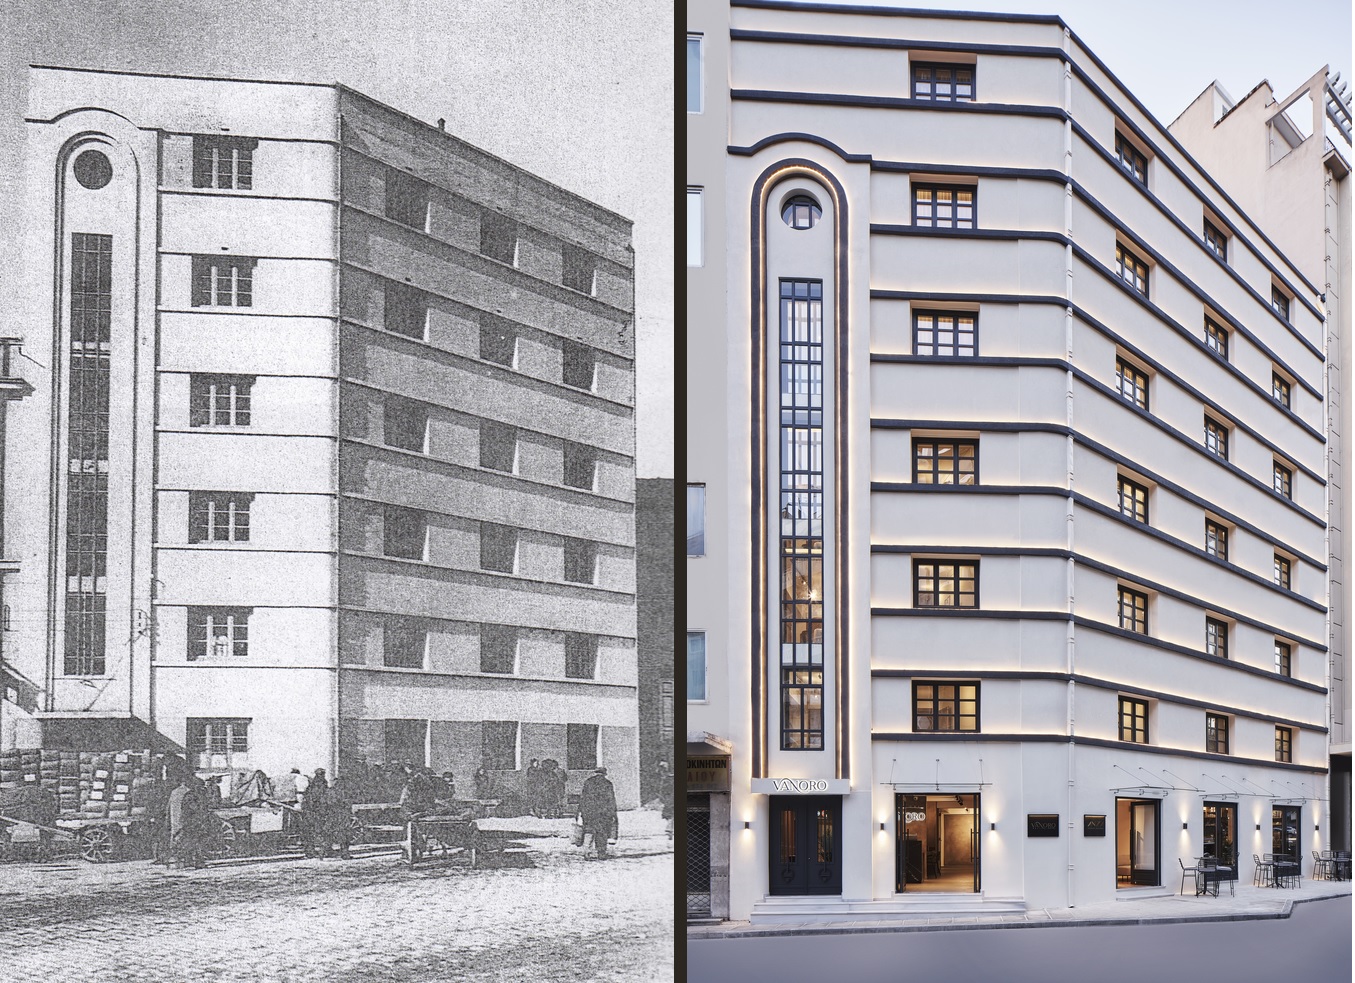 Hotel Vanoro (φωτογραφία 2021) - πρώην καπναποθήκη Γ. Γαβριήλογλου (φωτογραφία δεκαετία 1930)